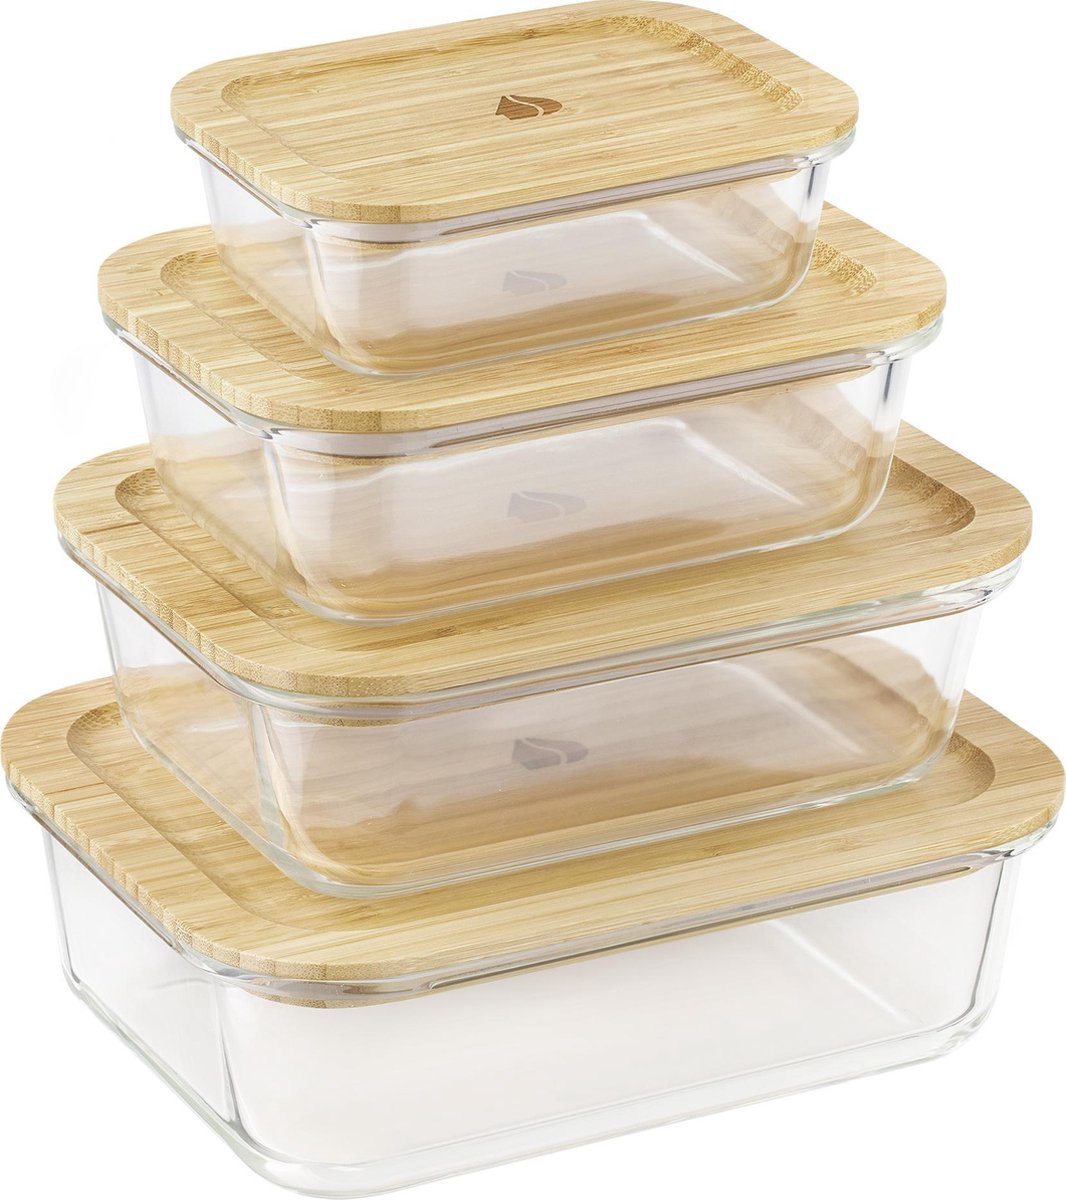 Navaris glazen vershoudbakjes - Set van 4 - Meal Prep bakjes met bamboe deksel - 4x vershouddoos van glas - BPA-vrij - Bakjes in 4 maten